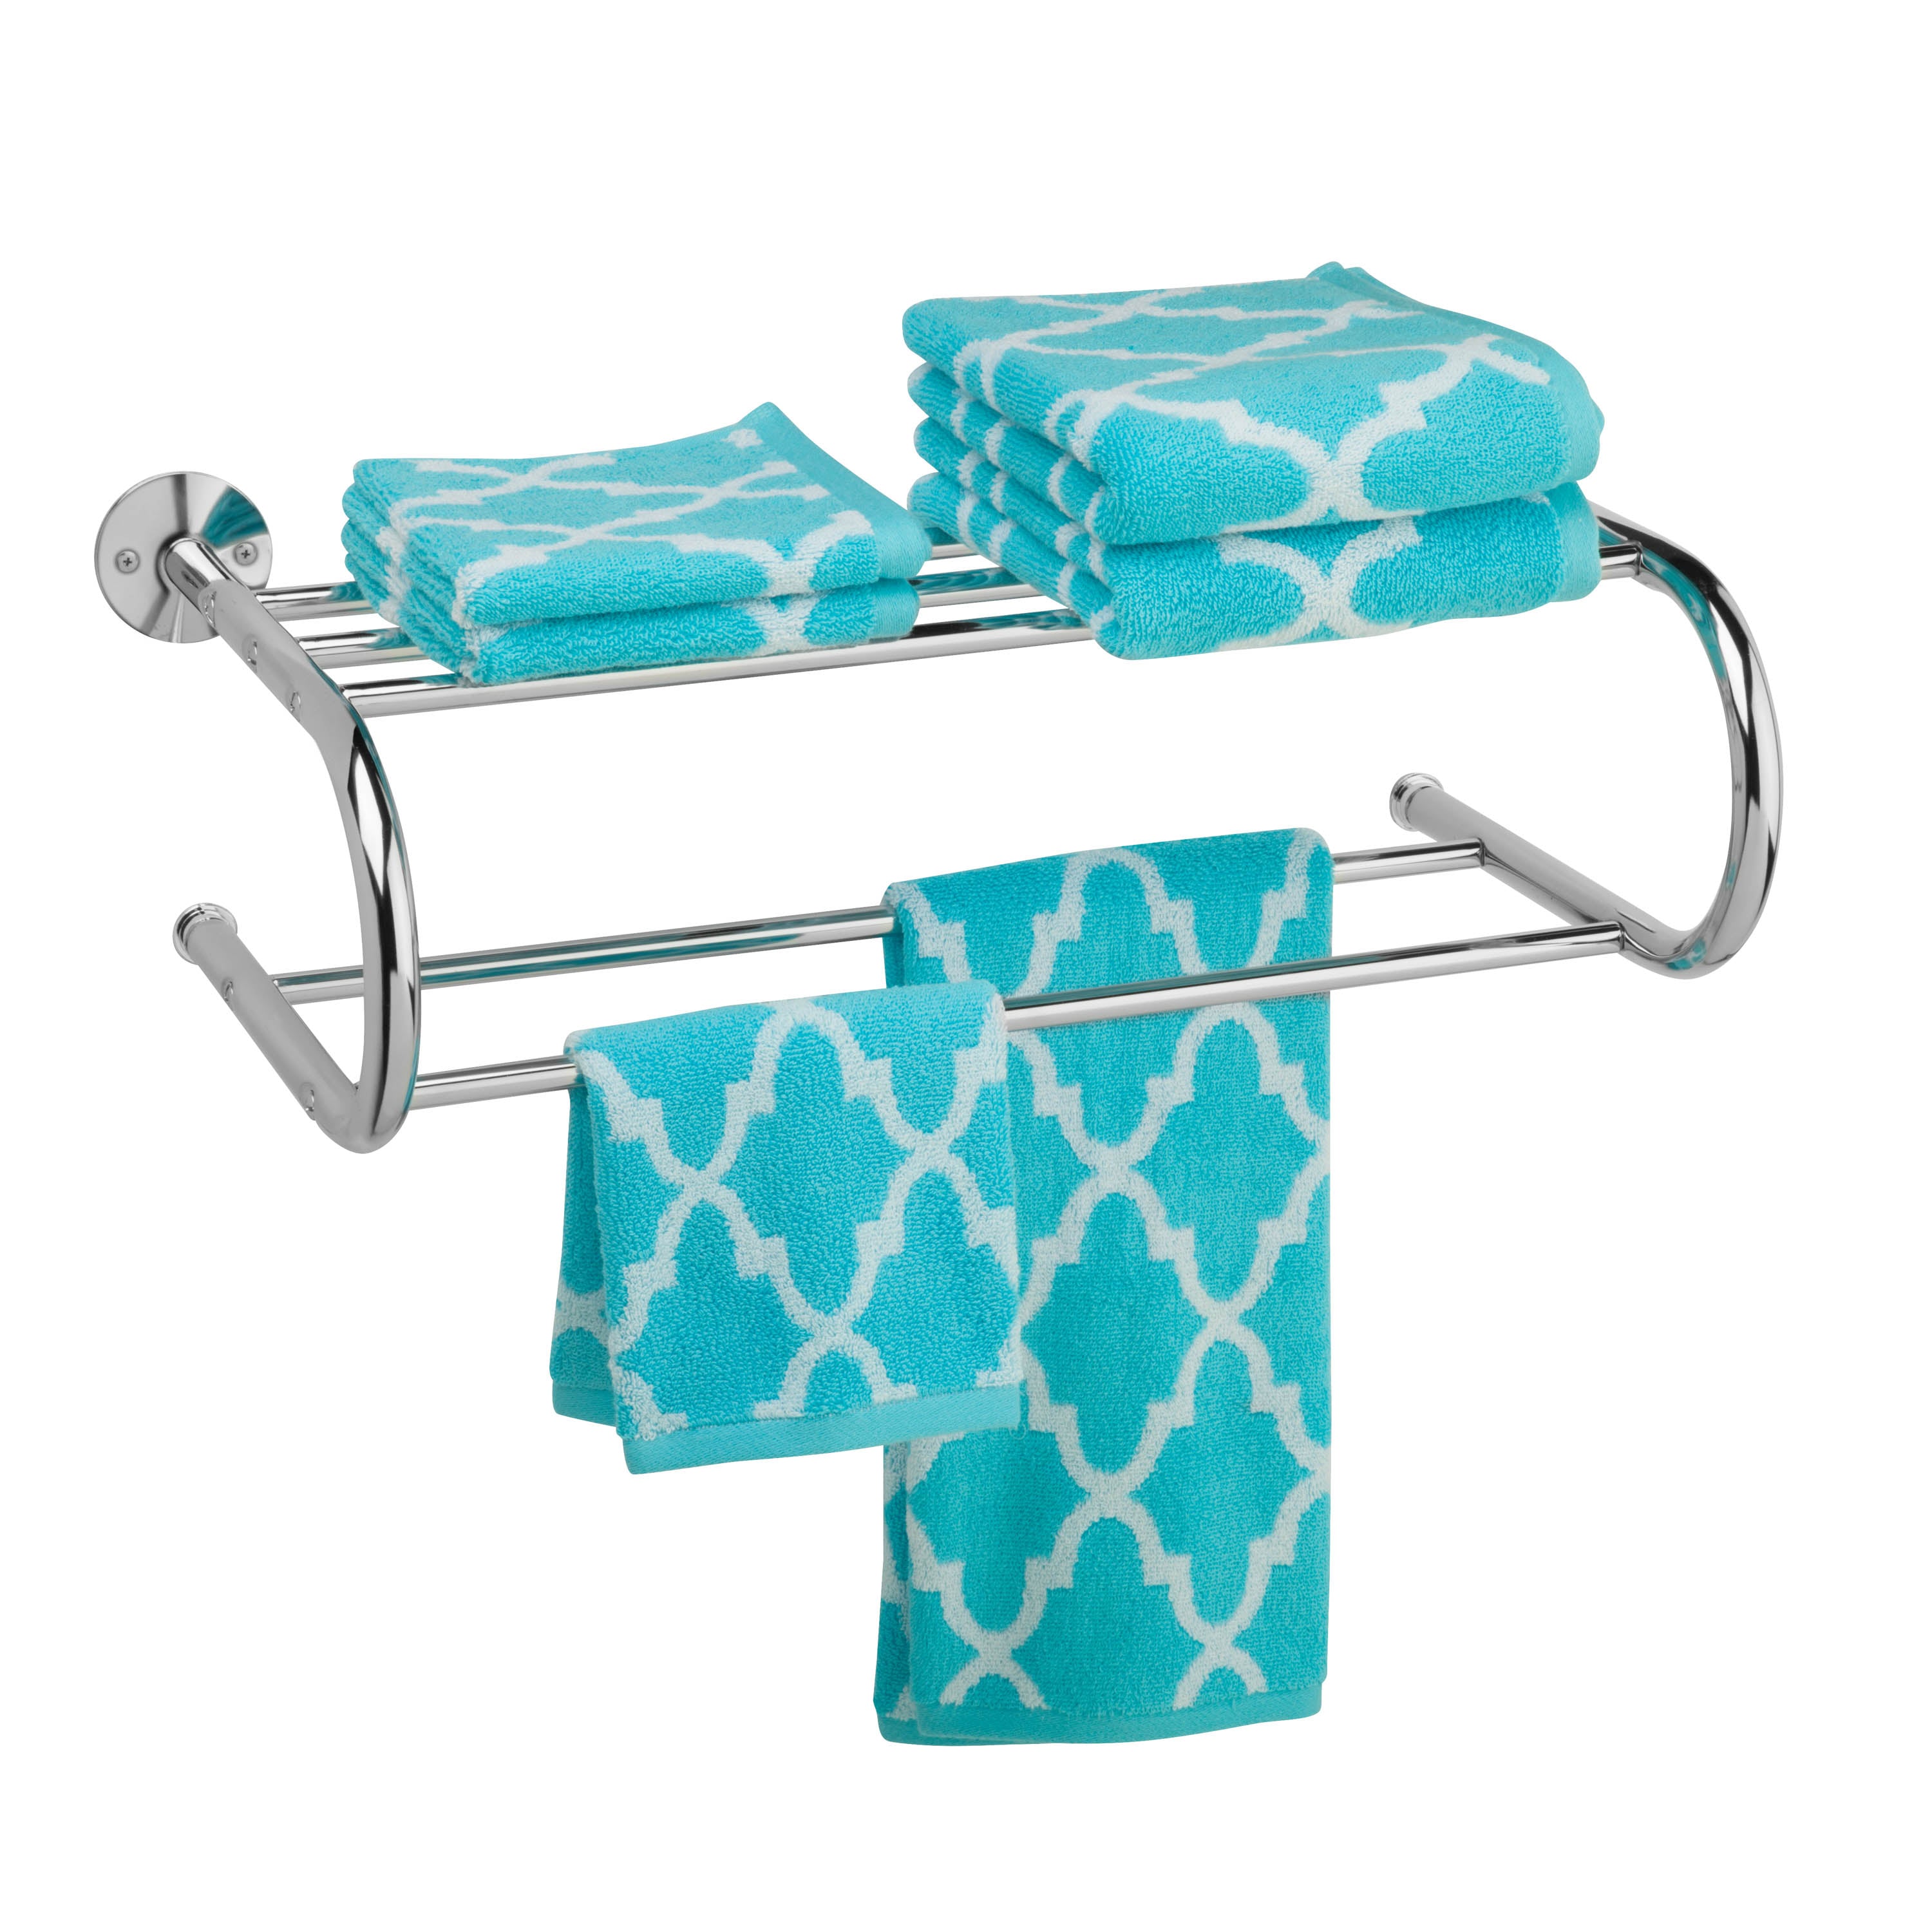 Dormify Supreme 2 Piece Bath Towel Set w/ Hook Loop | Dorm Essentials -  Dormify